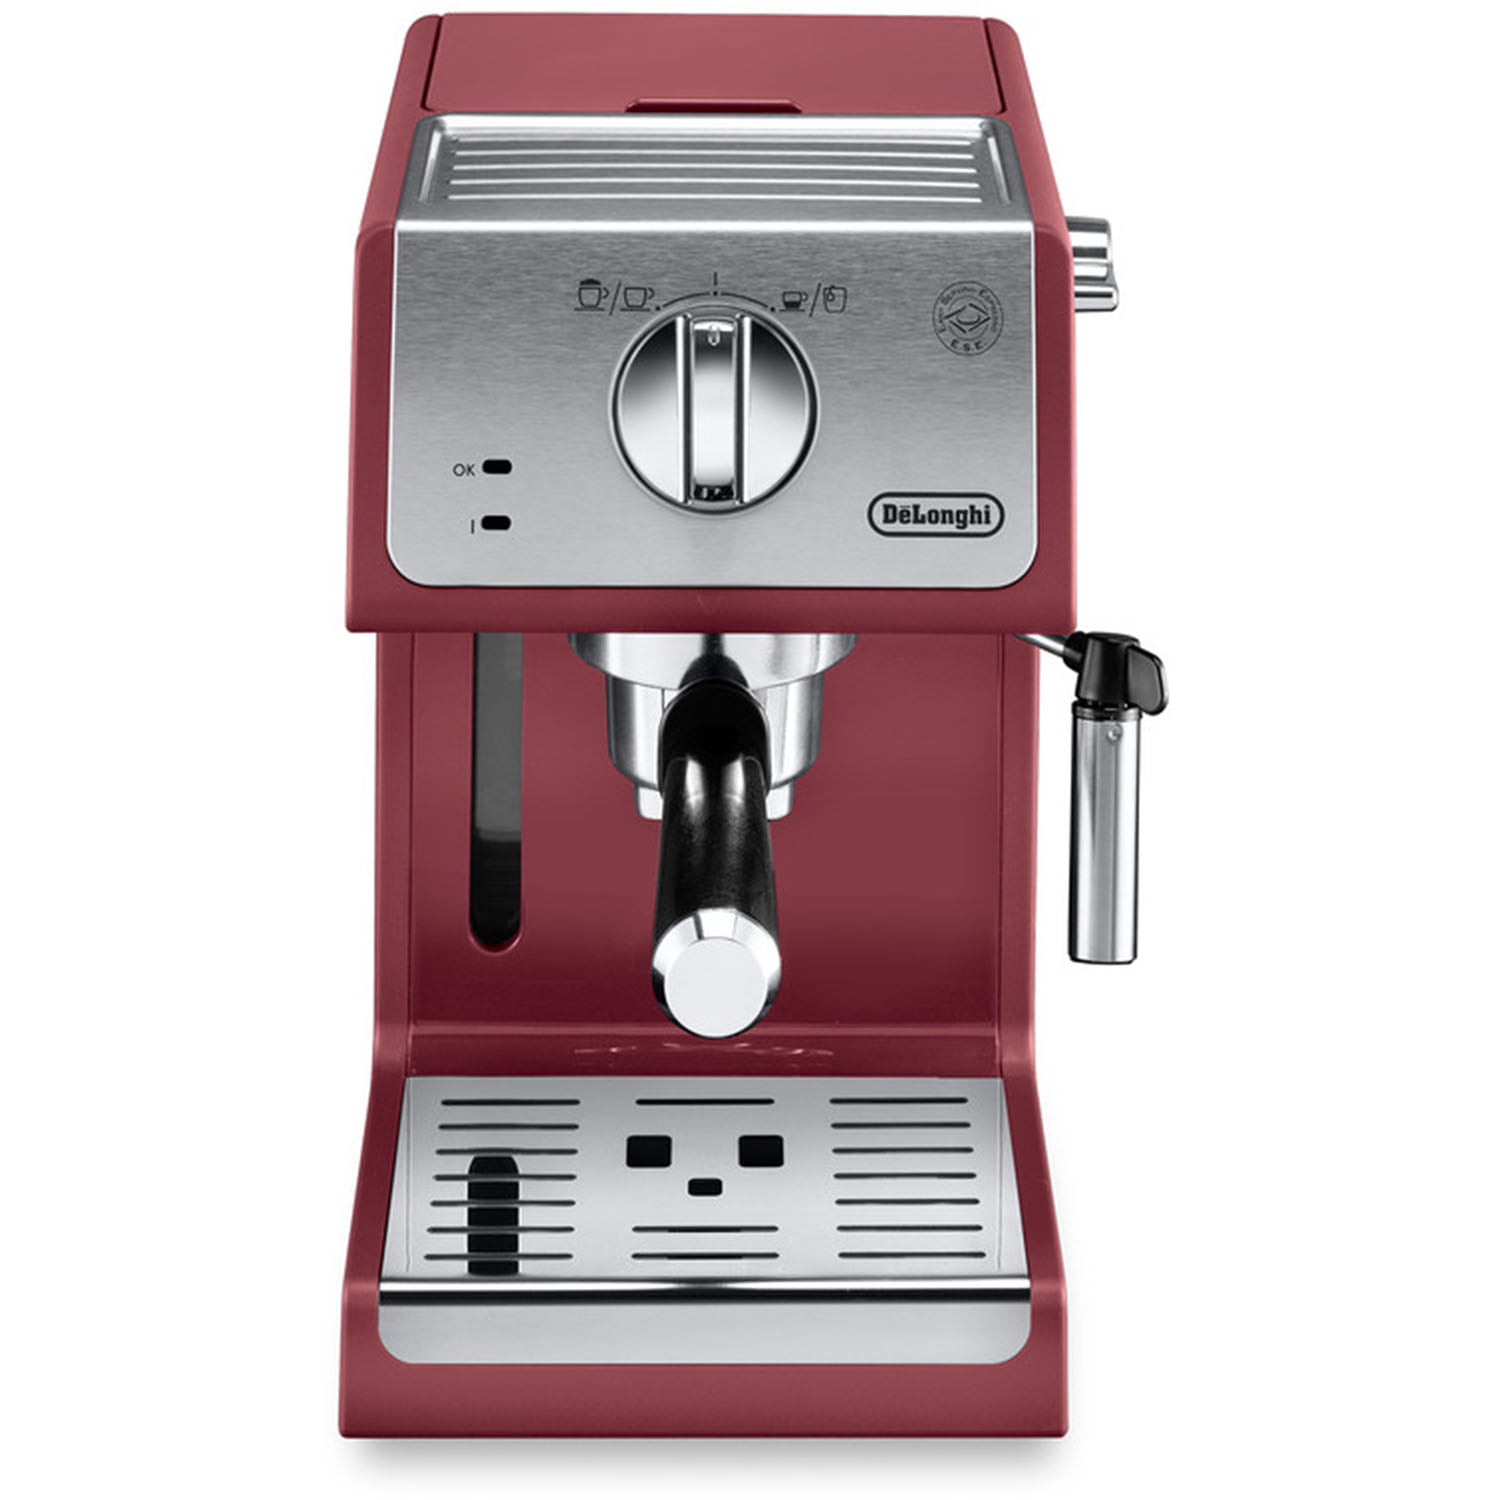 Delonghi coffee&cappuccino/frappuccino machine for Sale in Phoenix